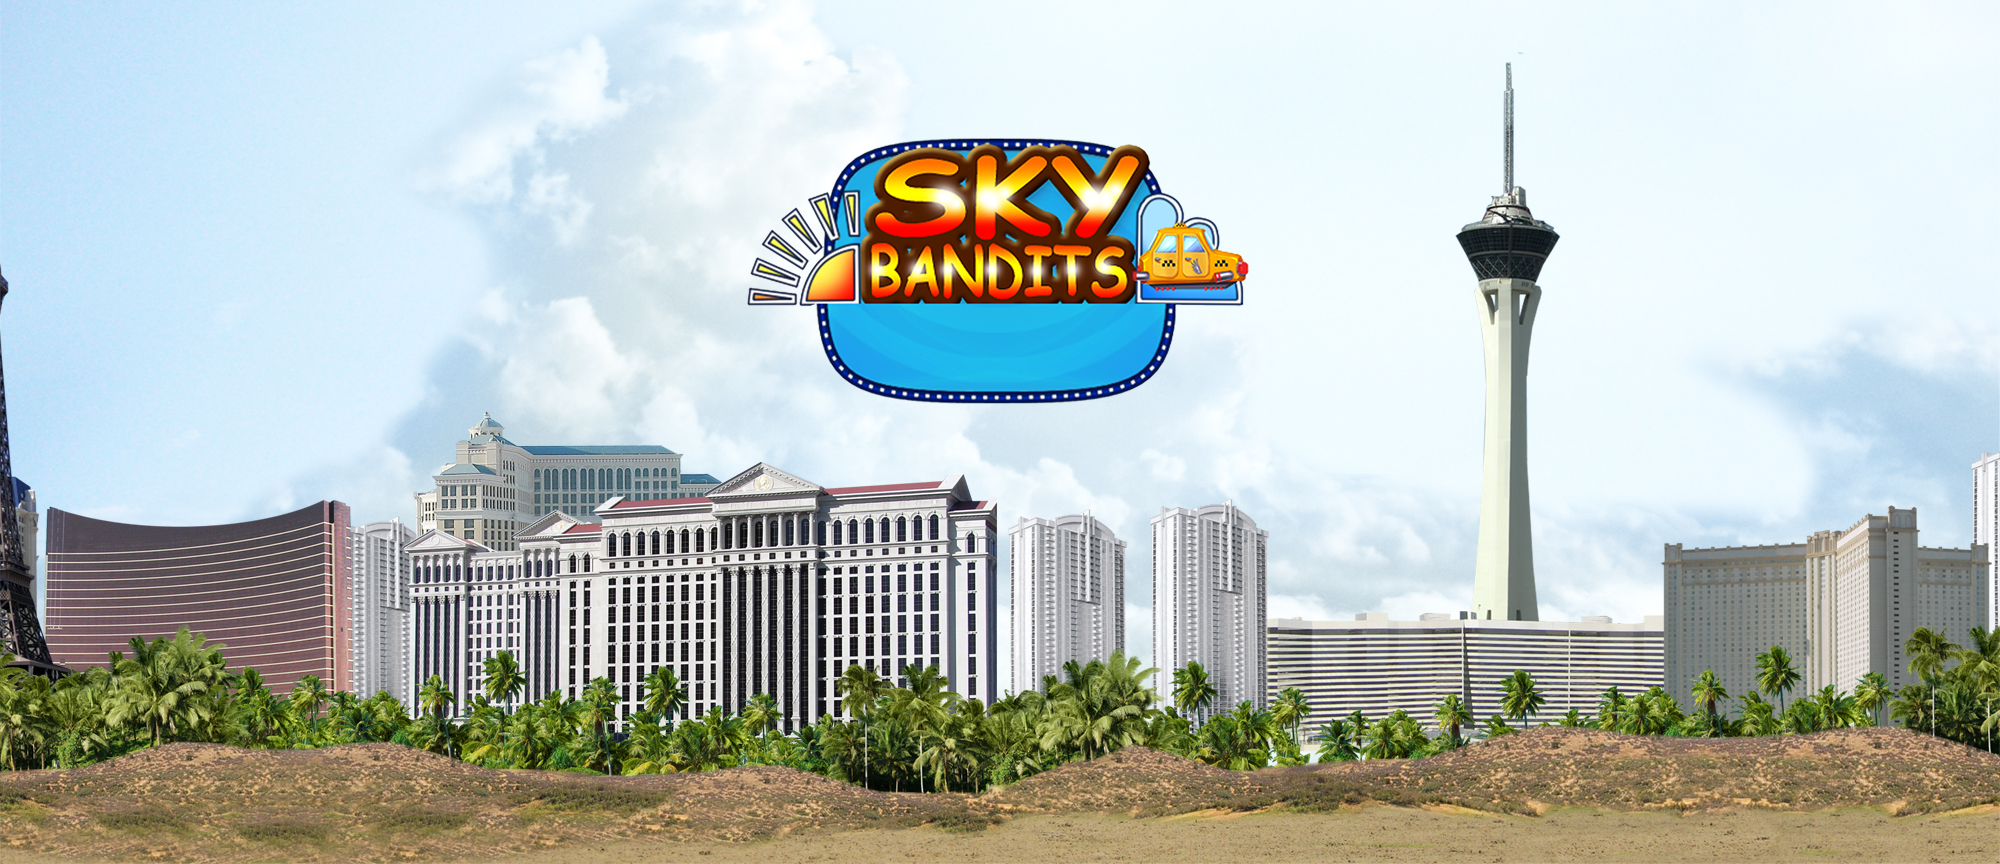 Sky Bandits (Sky Taxi)